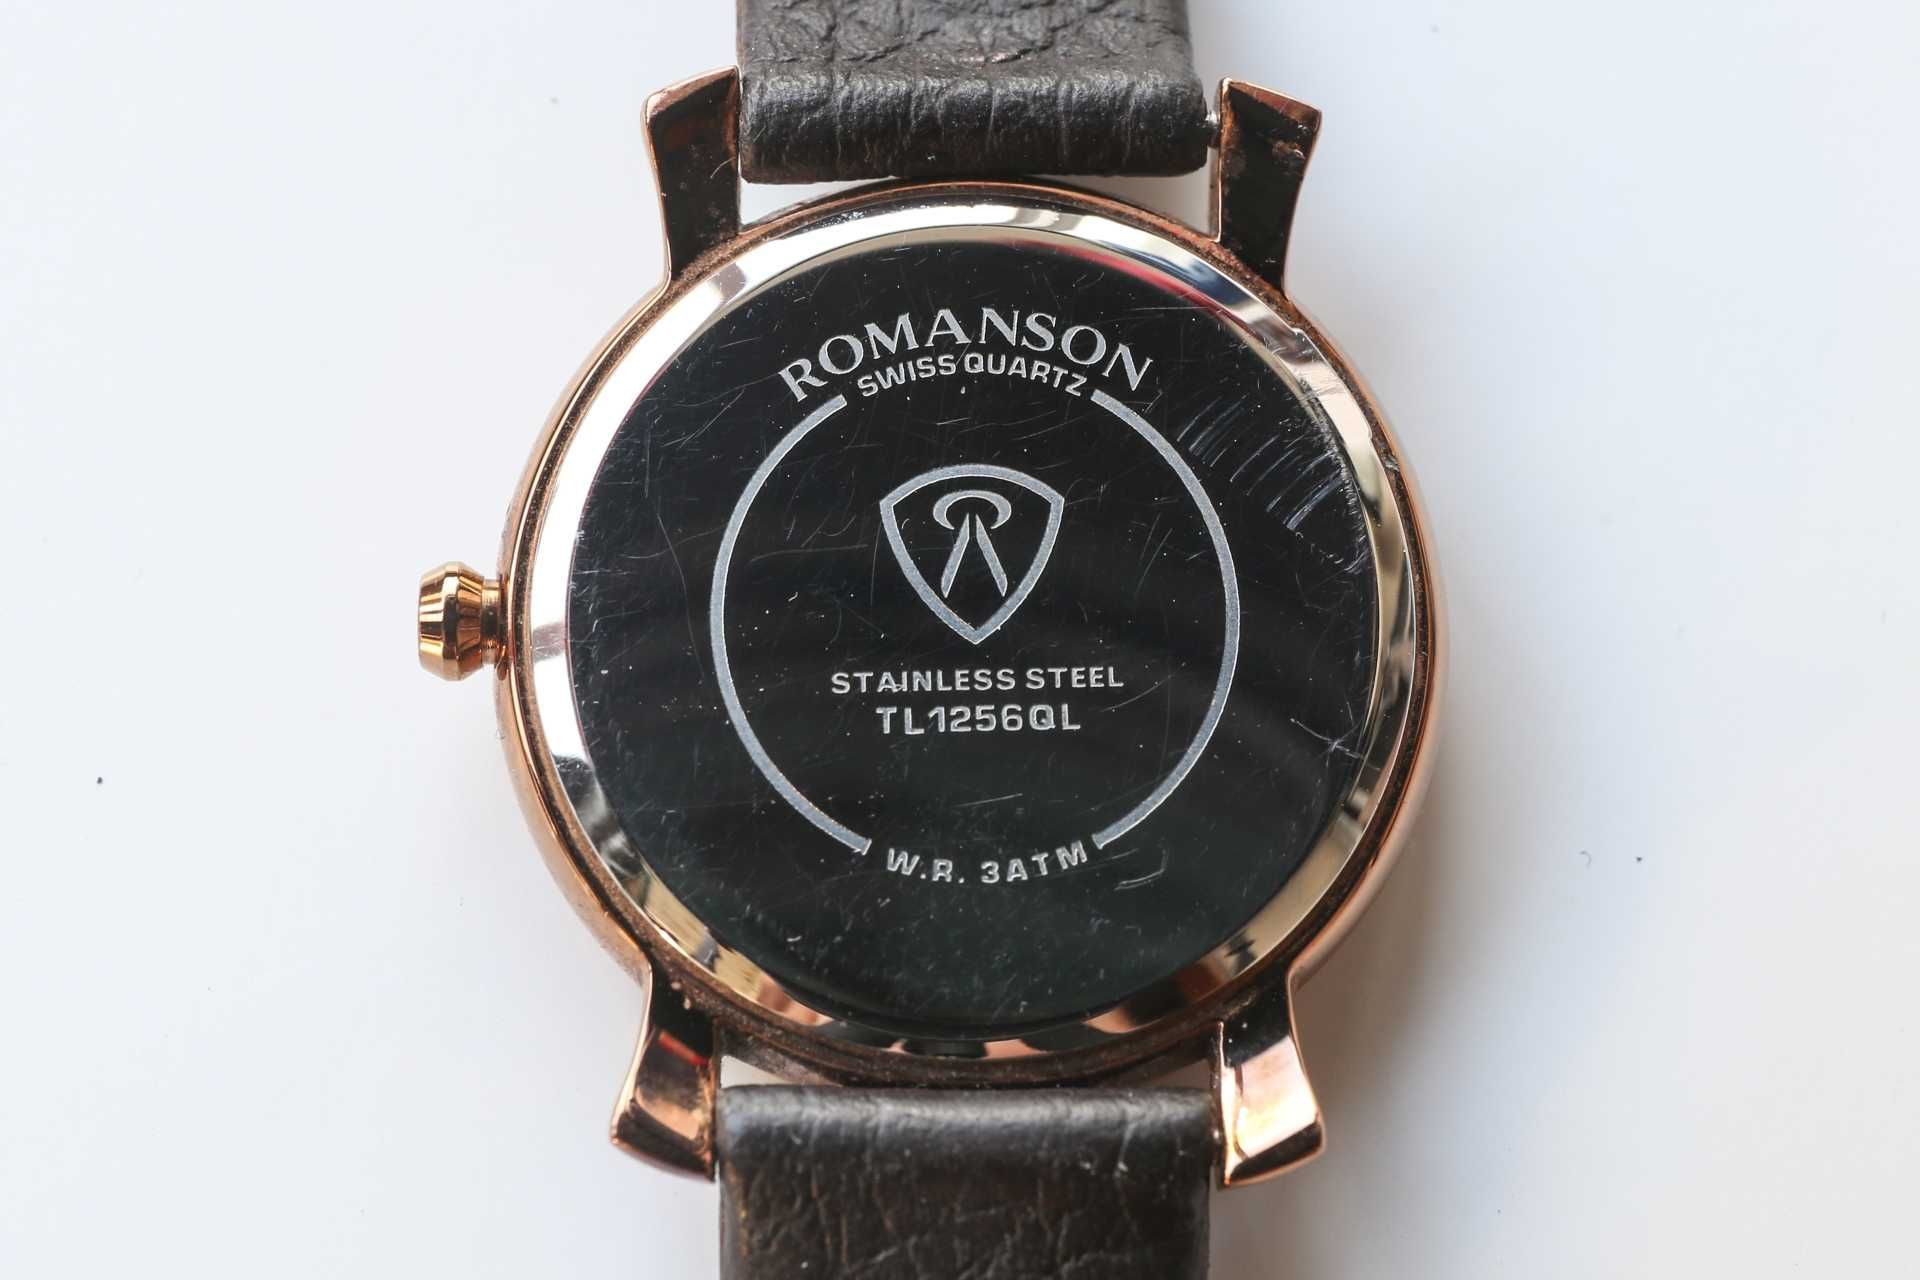 Наручные часы Romanson TL1256QL